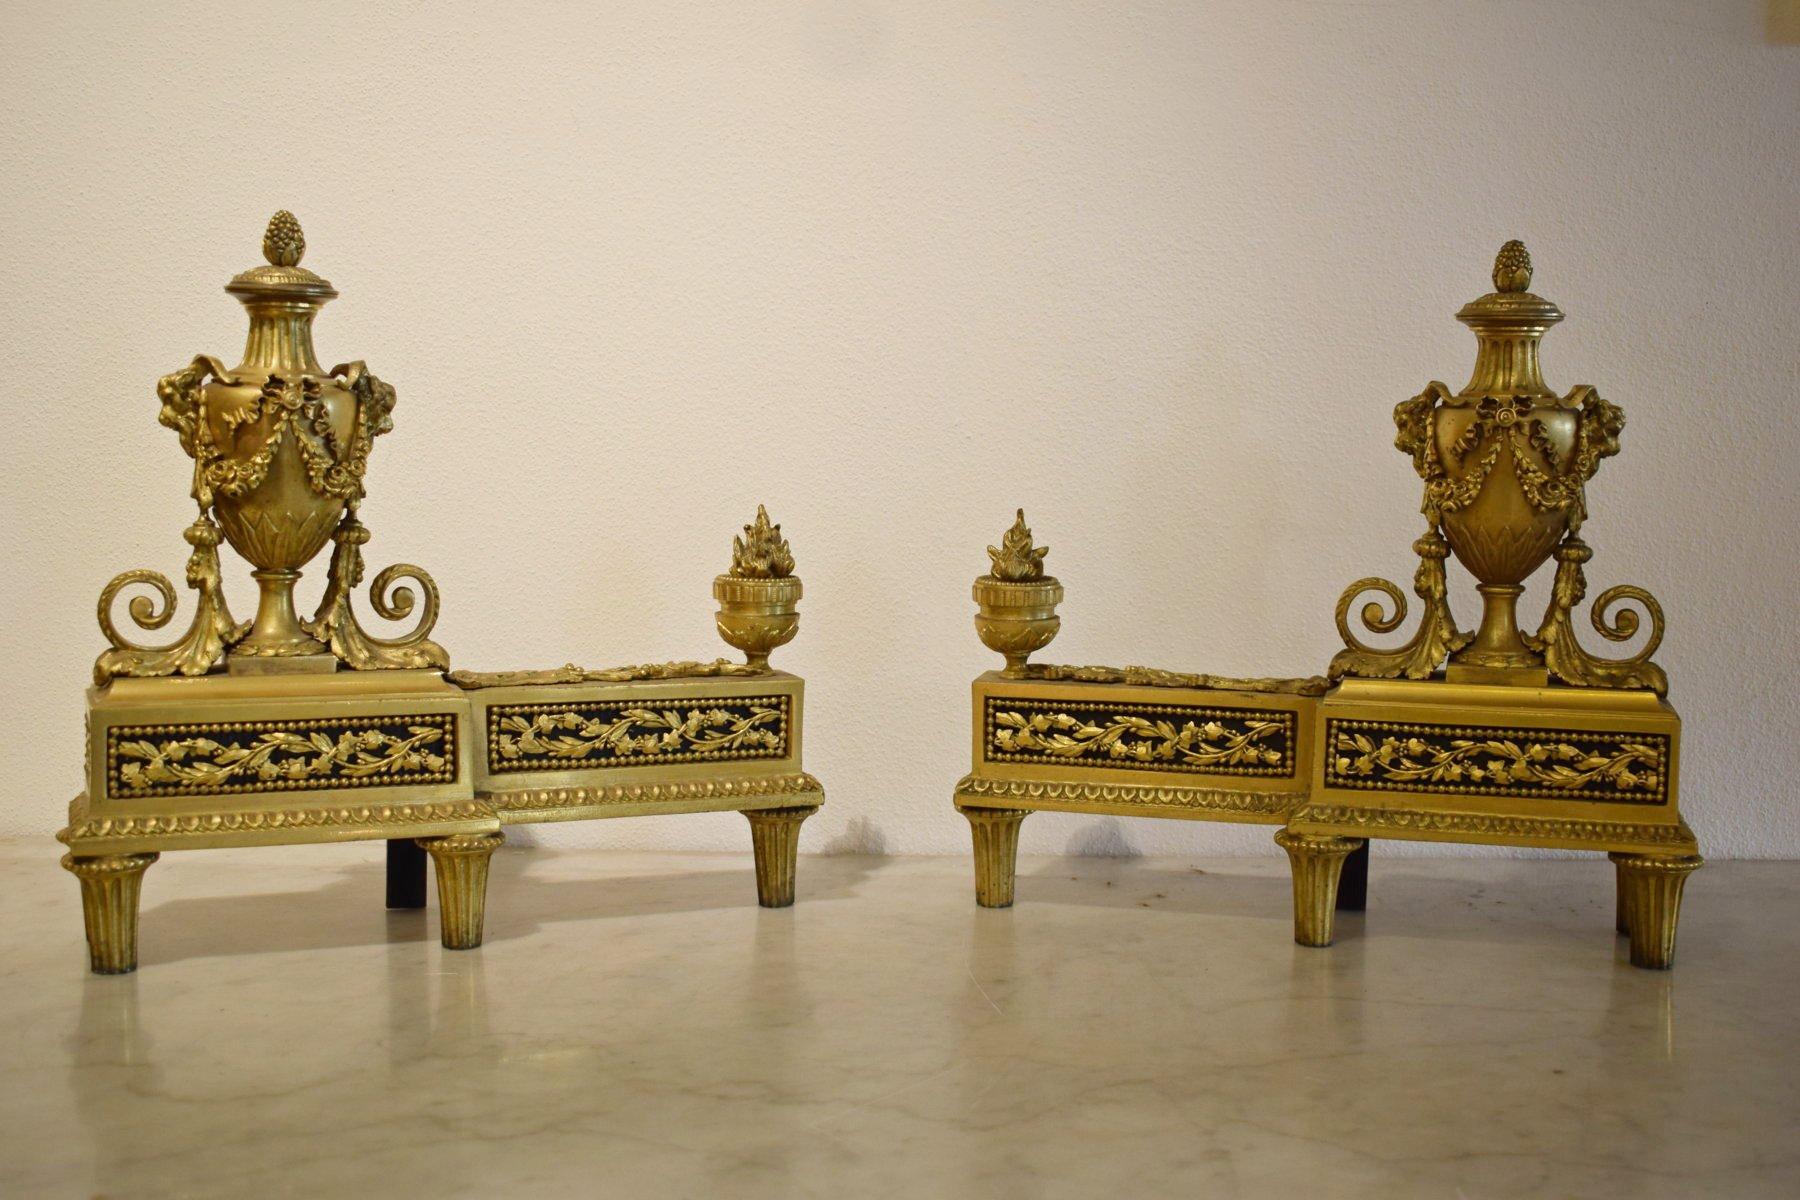 19. Jahrhundert, Paar vergoldete Bronzekamine im Louis XVI-Stil, 

Das Kaminpaar Chenets wurde in der ersten Hälfte des 19. Jahrhunderts im Stil Louis XVI hergestellt. Die Chenets für den Kamin sind aus vergoldeter Bronze und fein ziseliert. Sie